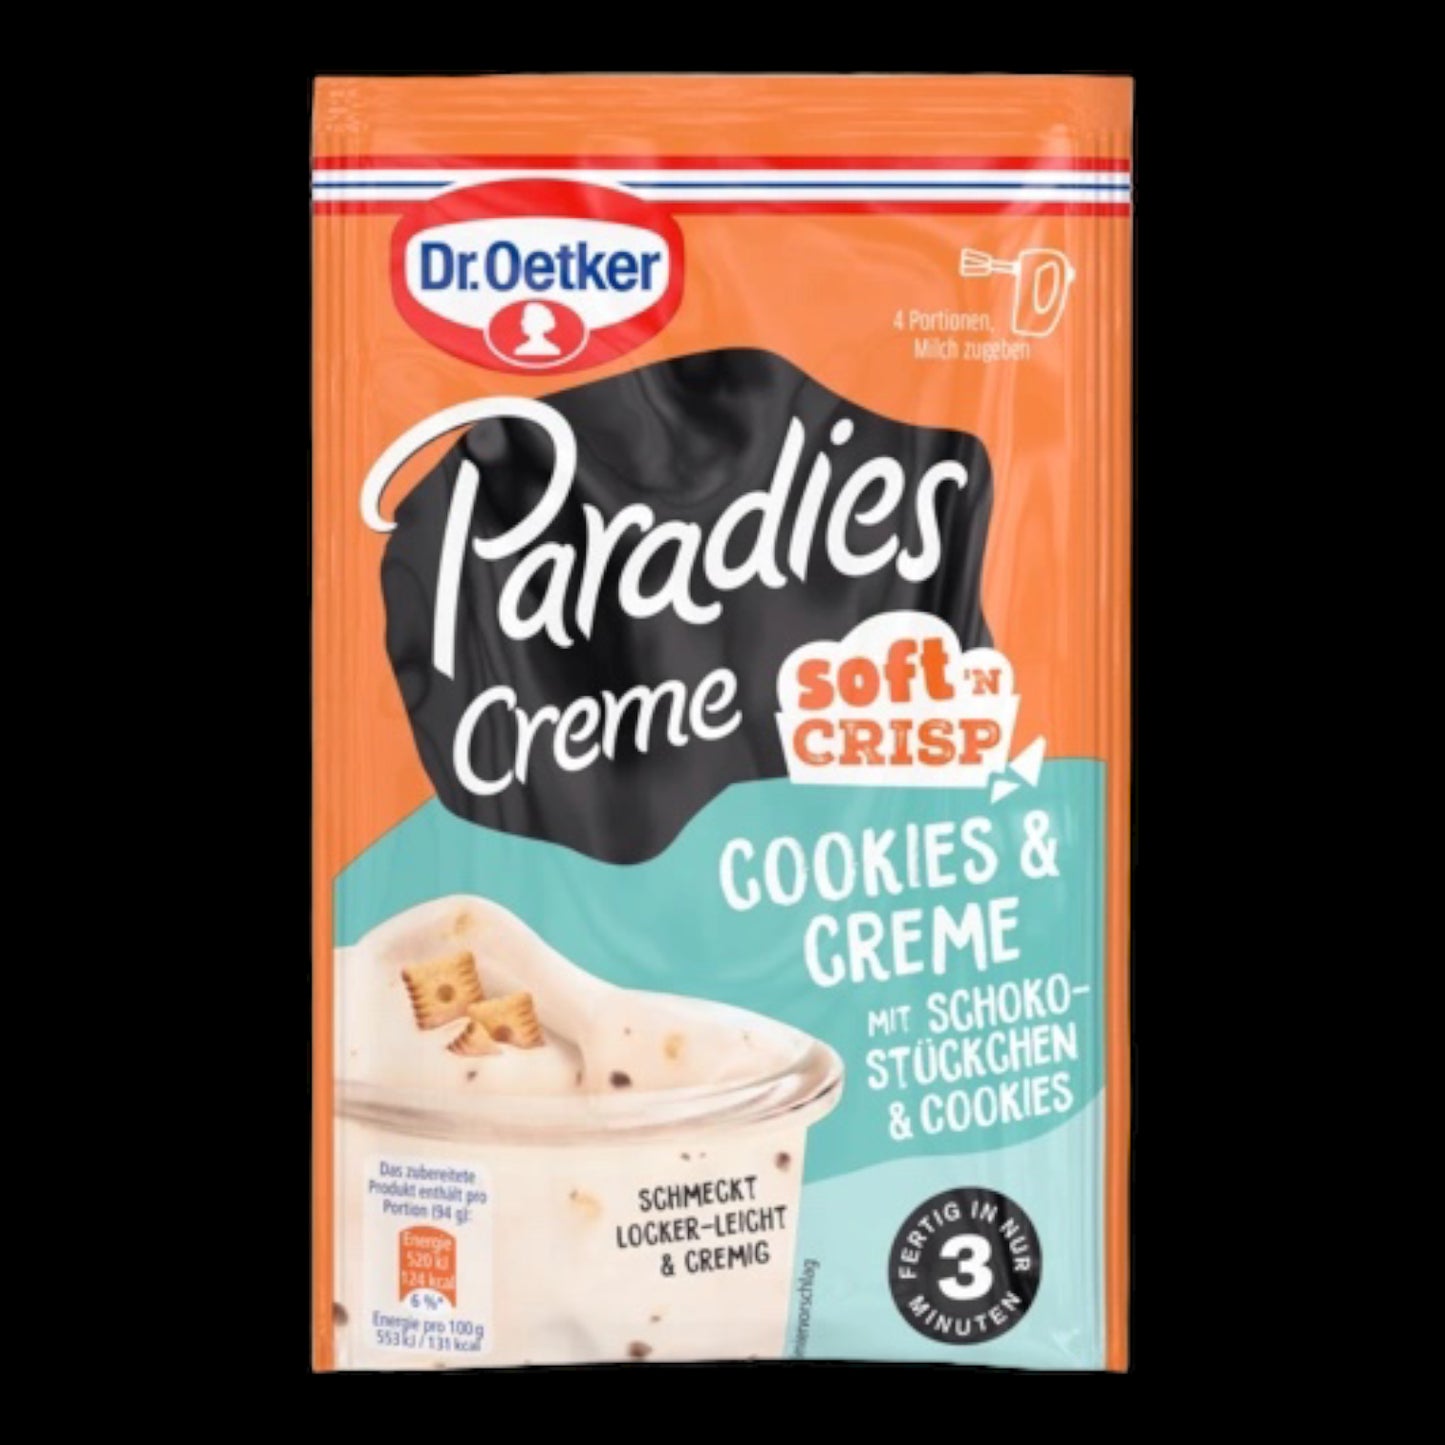 Dr. Oetker Paradies Creme Soft'n Crisp Cookies & Creme mit Schokostückchen & Cookies 78g